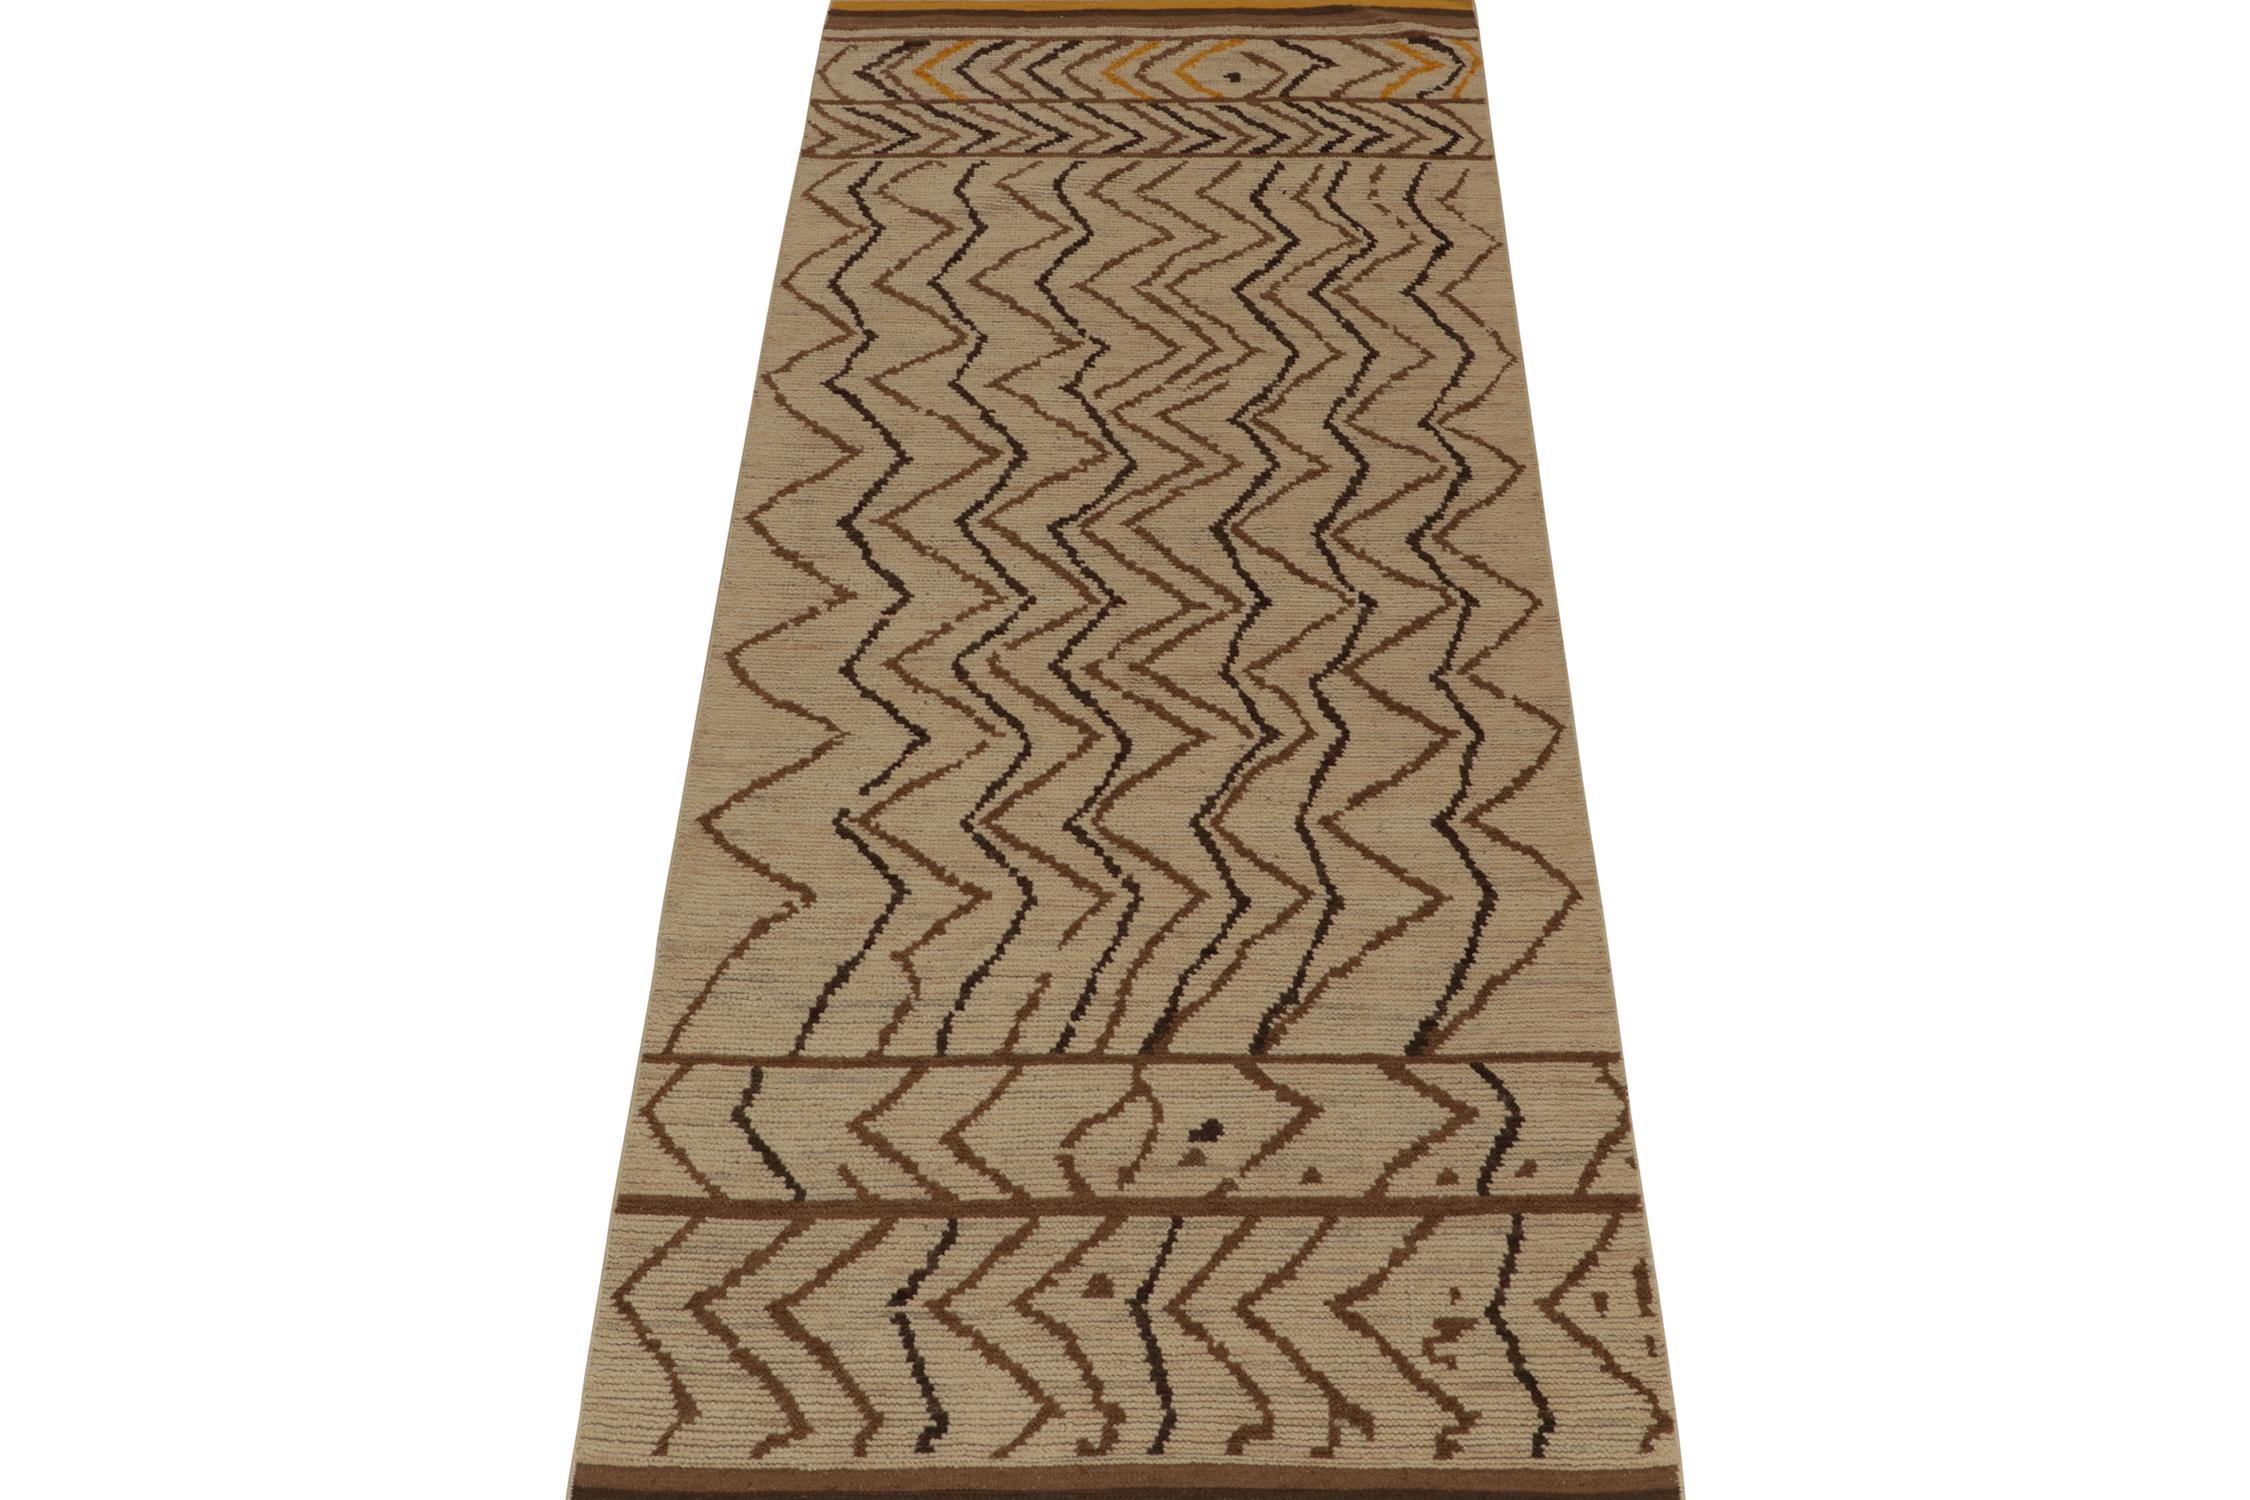 Tribal Rug & Kilim's Moroccan Style Rug in Beige-Brown Chevrons with Gold Accents (tapis de style marocain à chevrons beige et marron avec des accents dorés) en vente